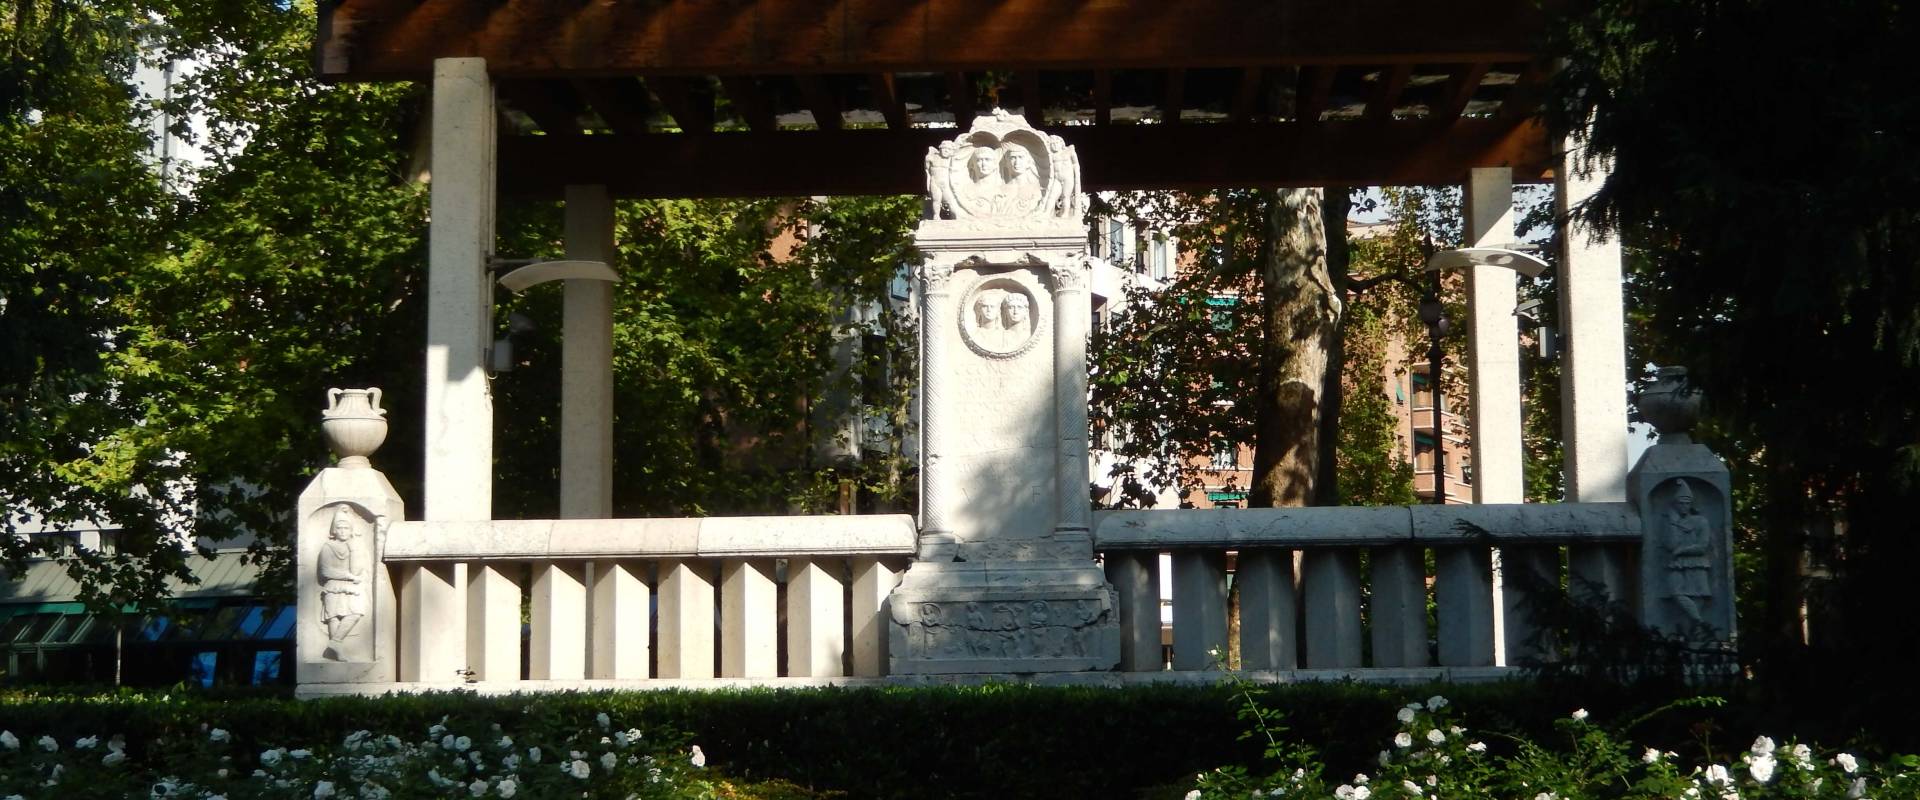 Monumento dei liberti nei Giardini foto di Lullug95